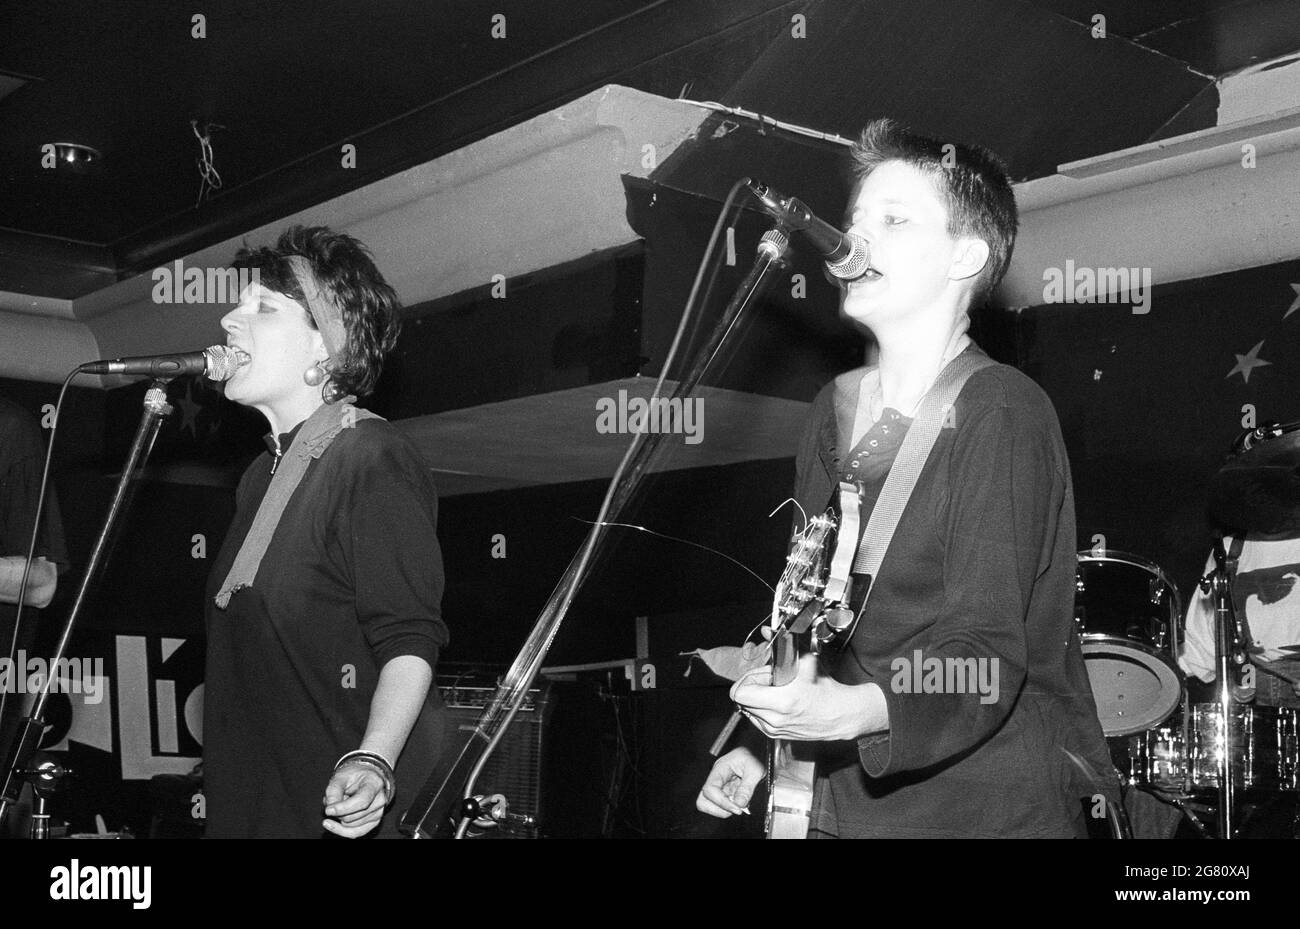 Jacqui Callis y Paula Richards de los Renees actuando en un lugar desconocido en Londres en 1990. Foto de stock